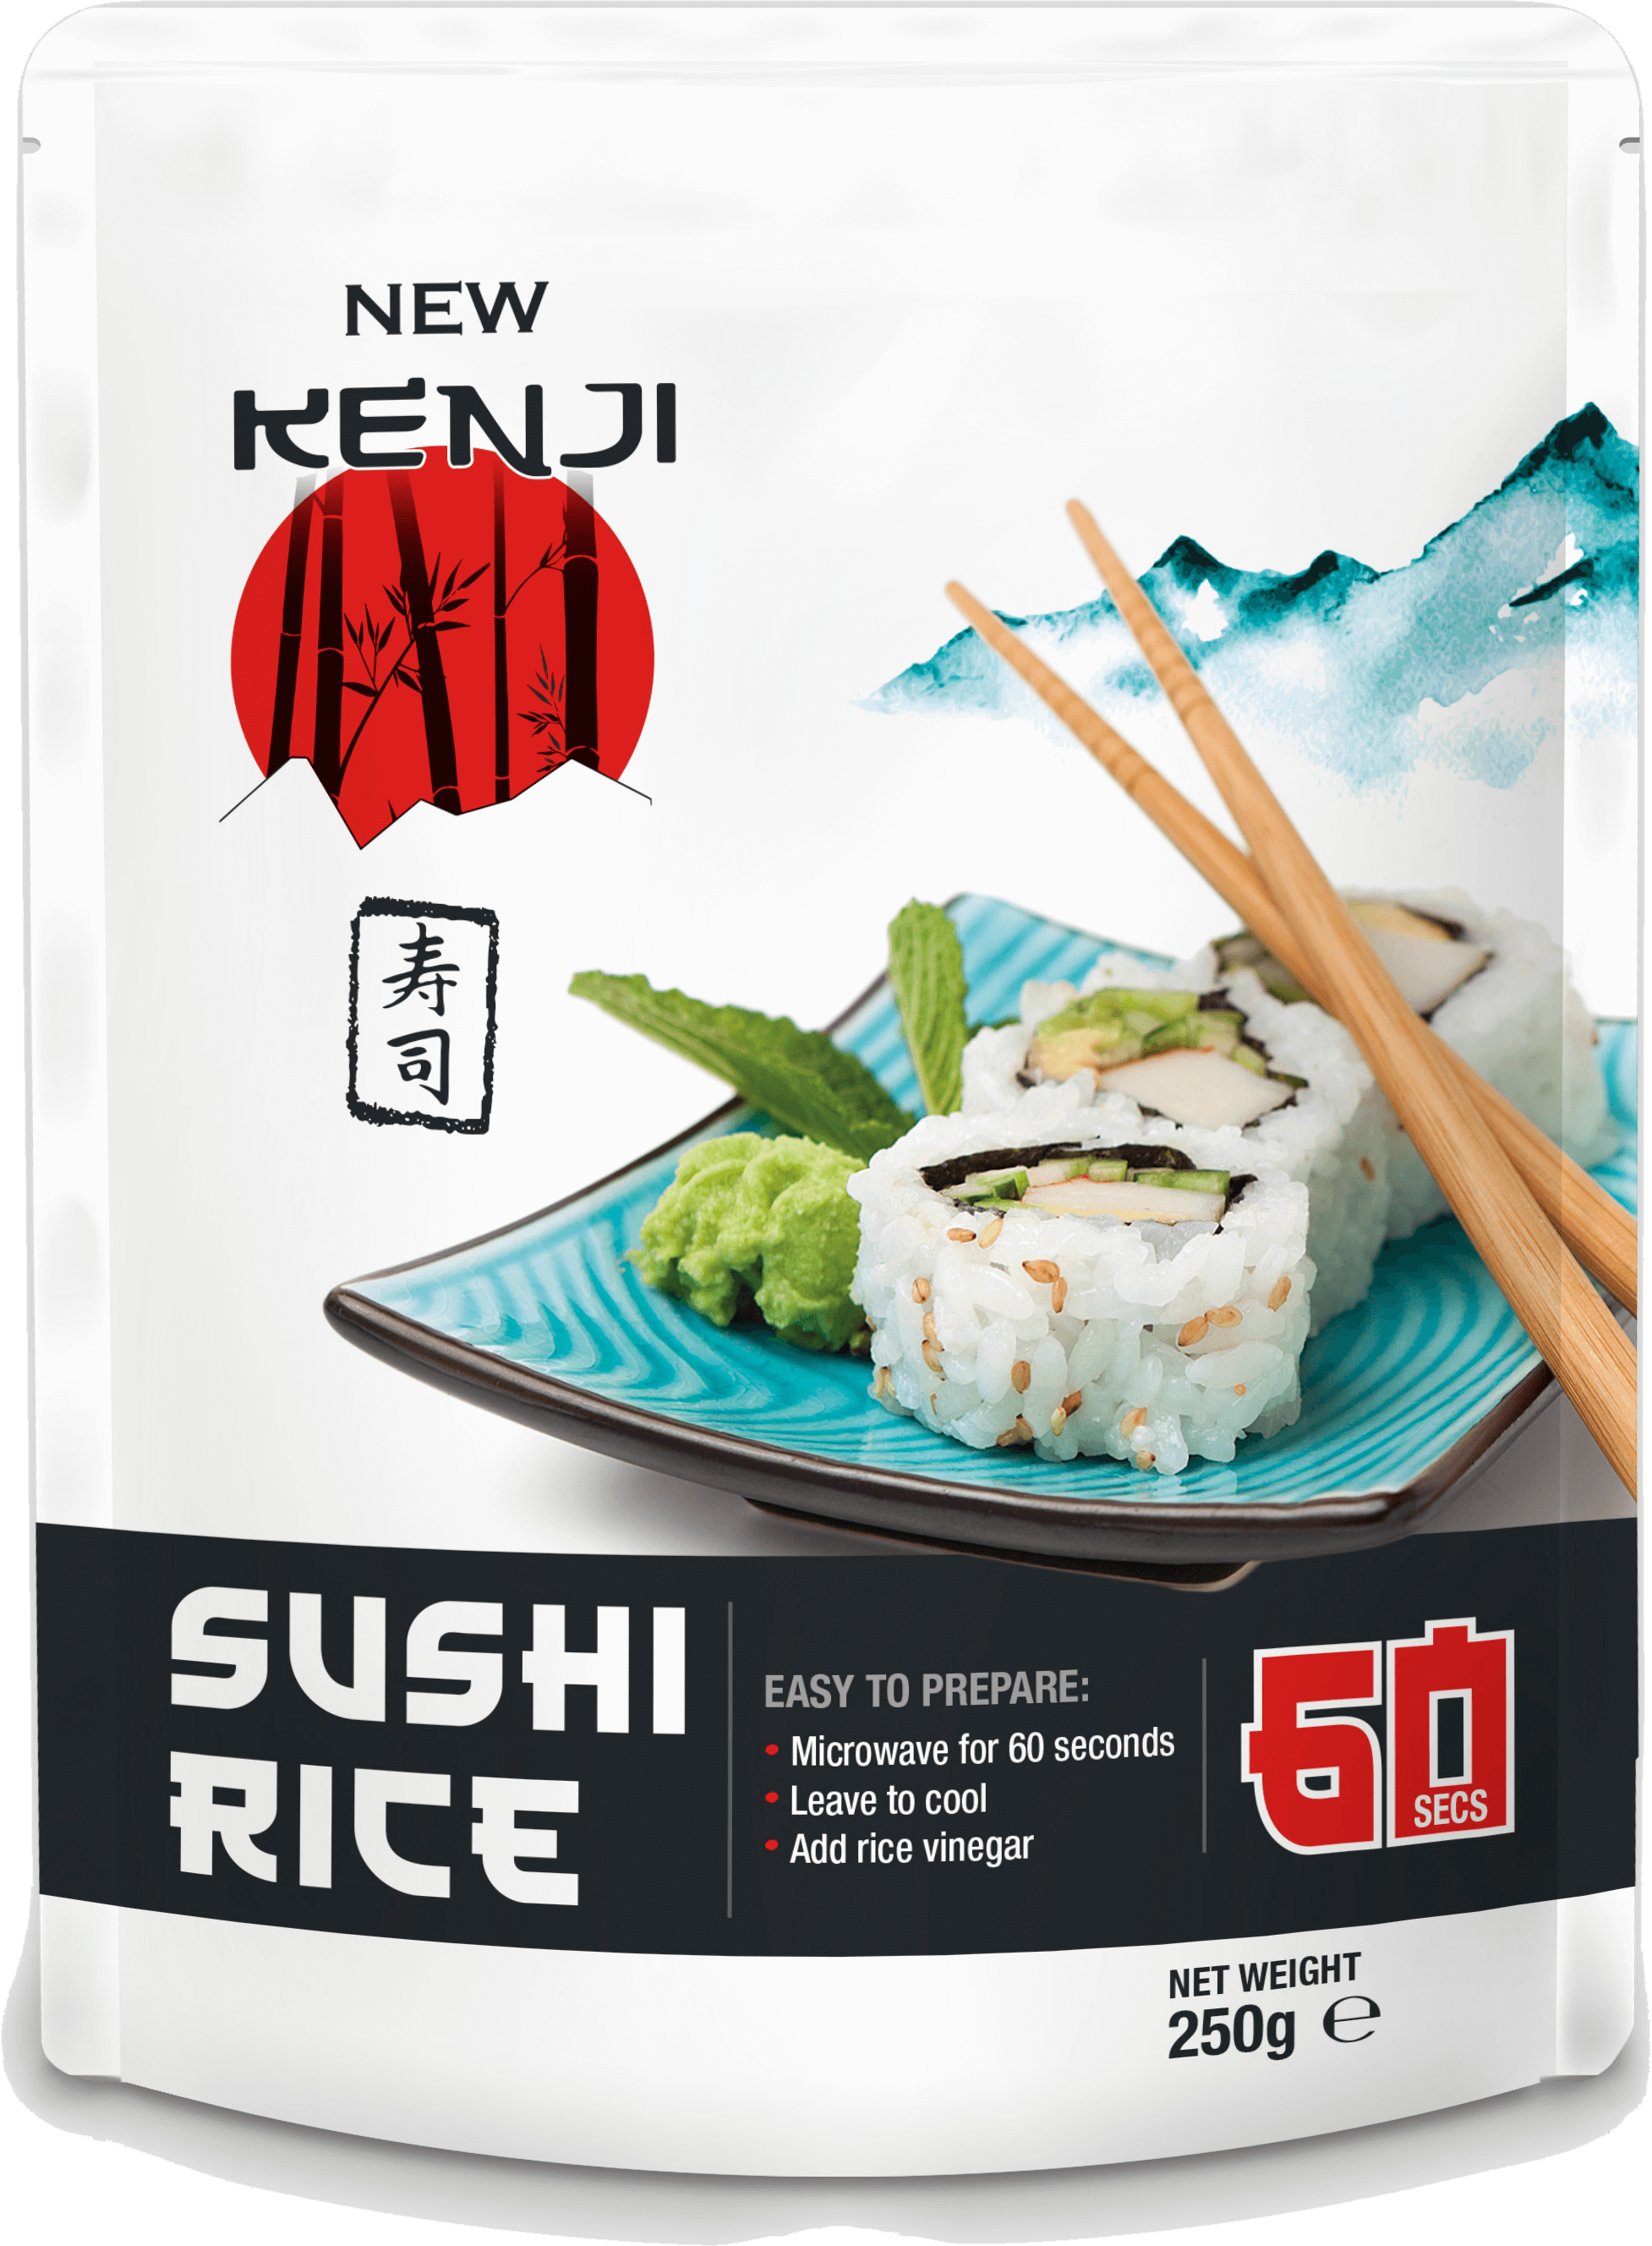 box of kenji sushi rice with white background